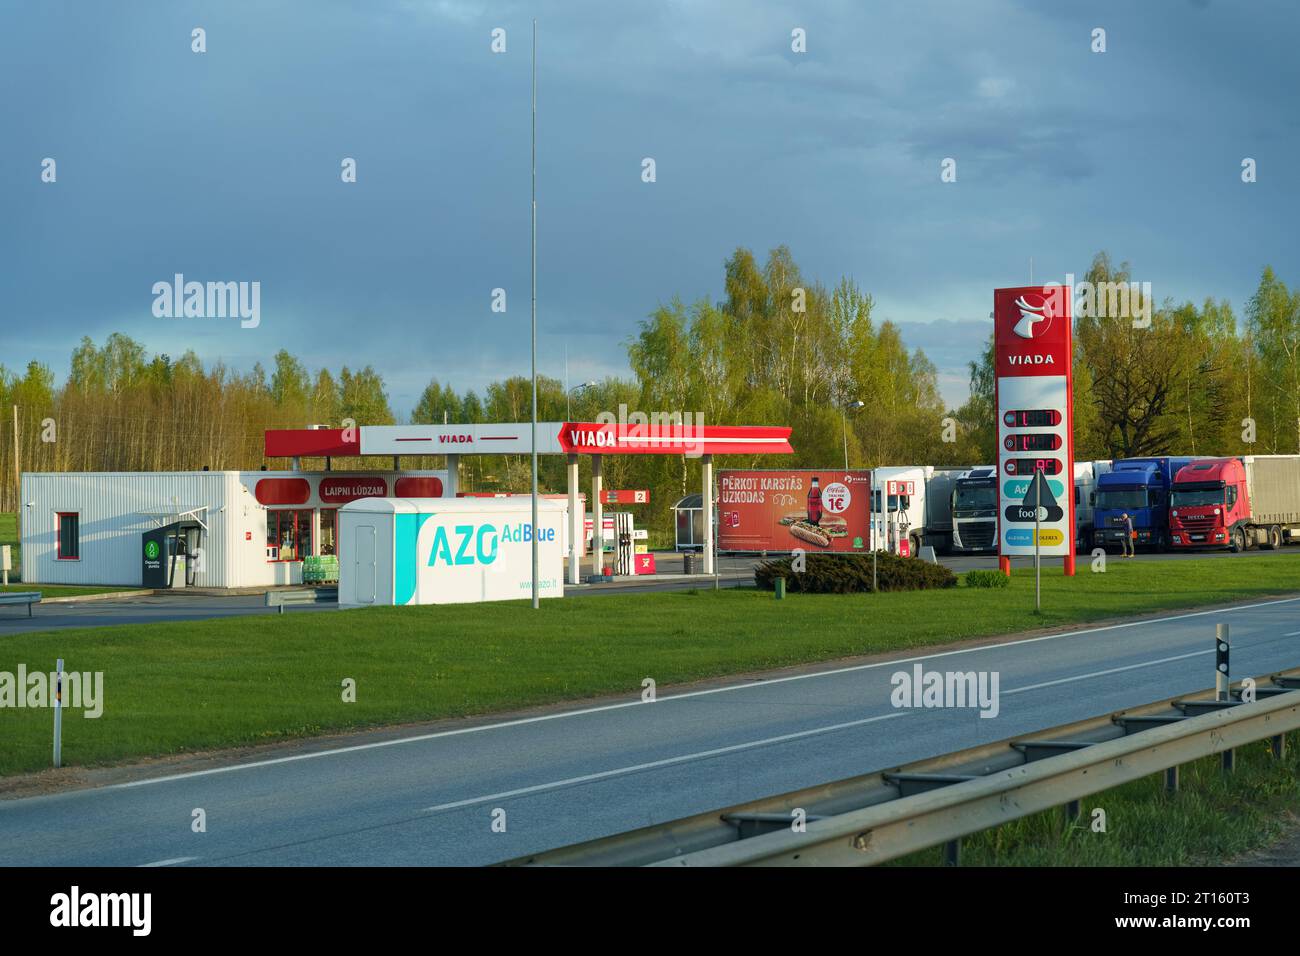 Vilnius, Lituania - 3 maggio 2023: Distributore di benzina Viada vicino all'autostrada. Foto Stock